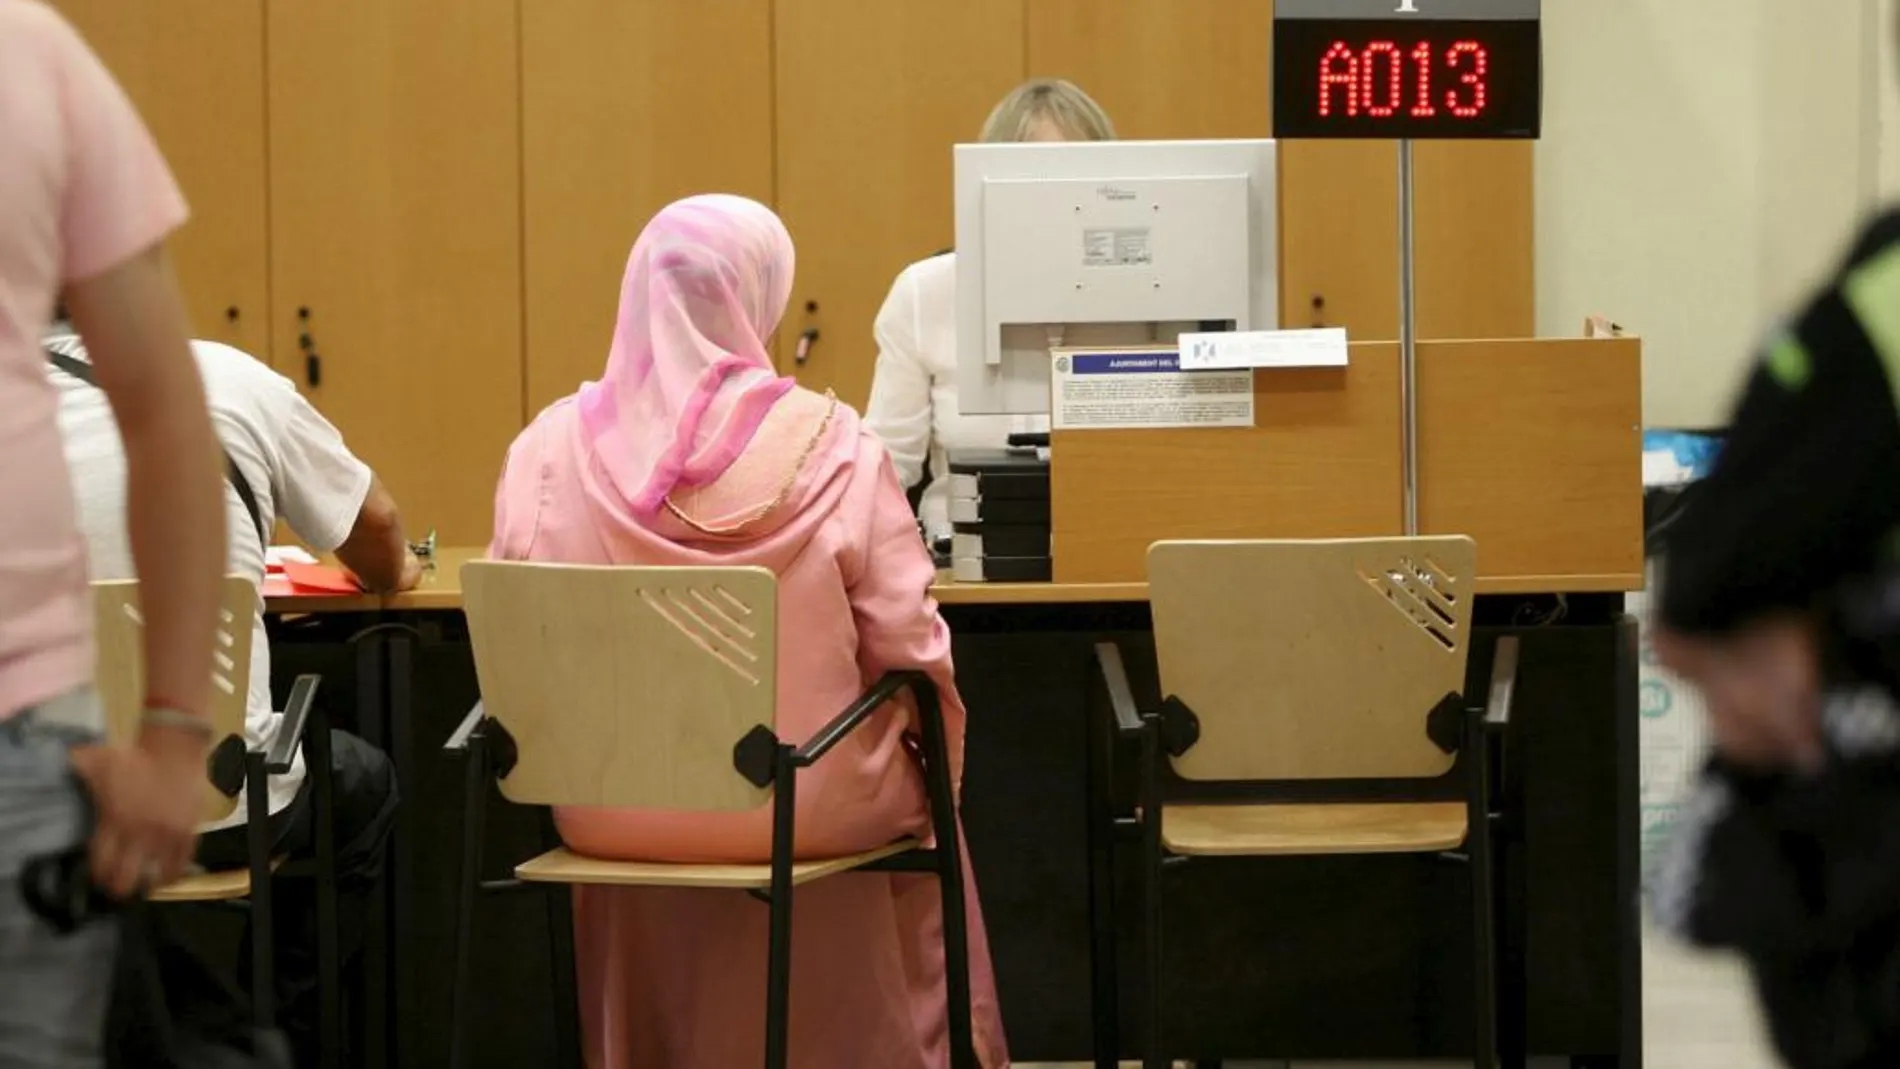 Una mujer musulmana aguarda para hacer gestiones en las instalaciones del Ayuntamiento de El Vendrell Tarragona